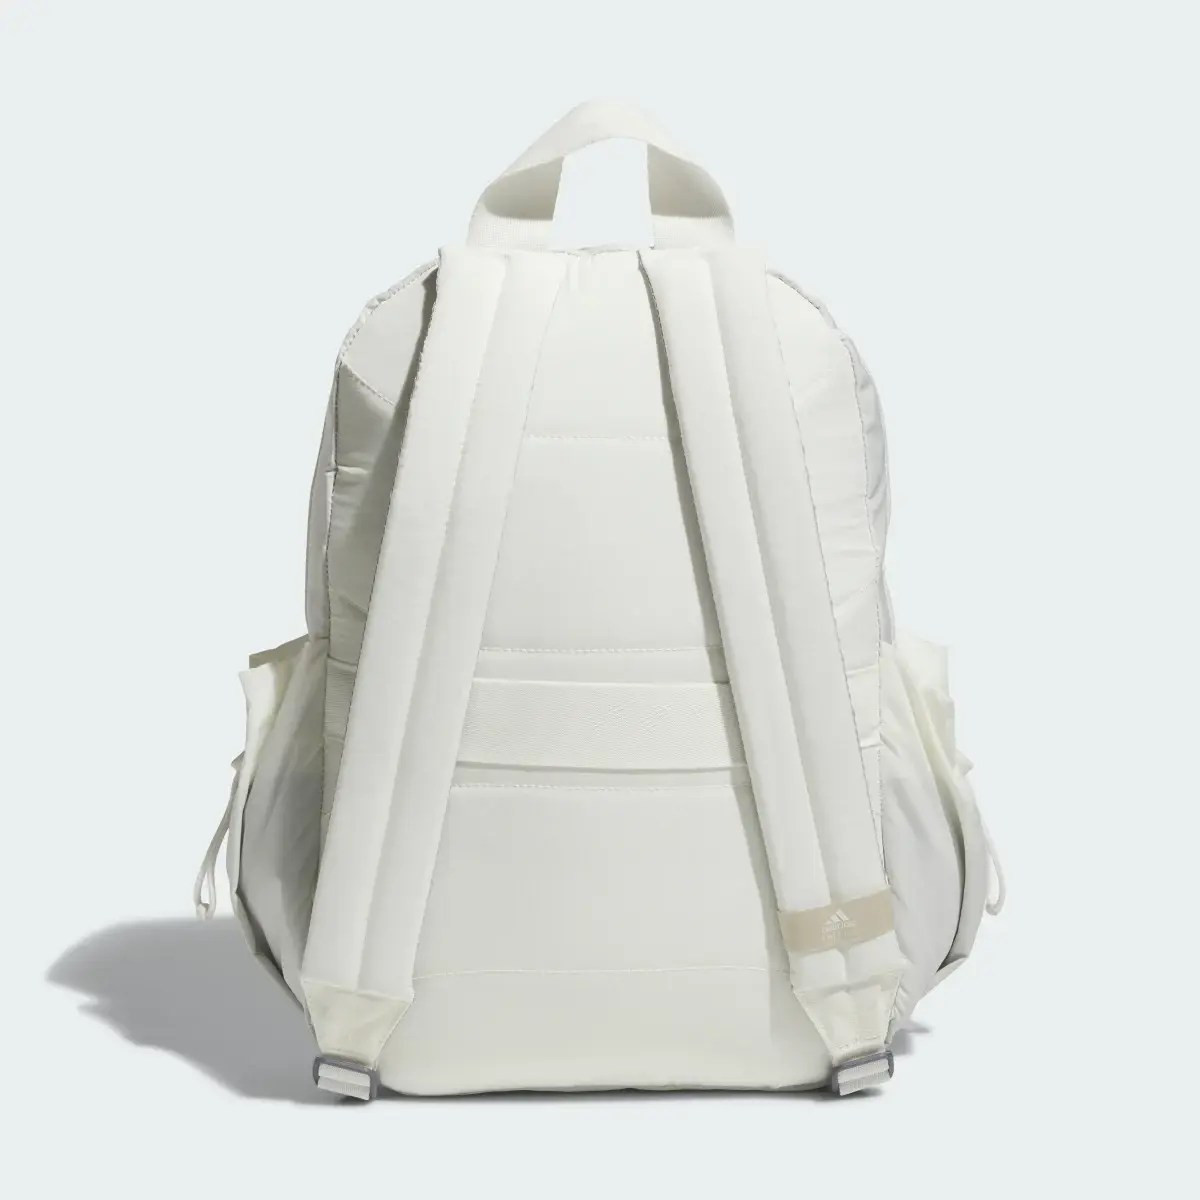 Adidas Weekender Backpack. 3